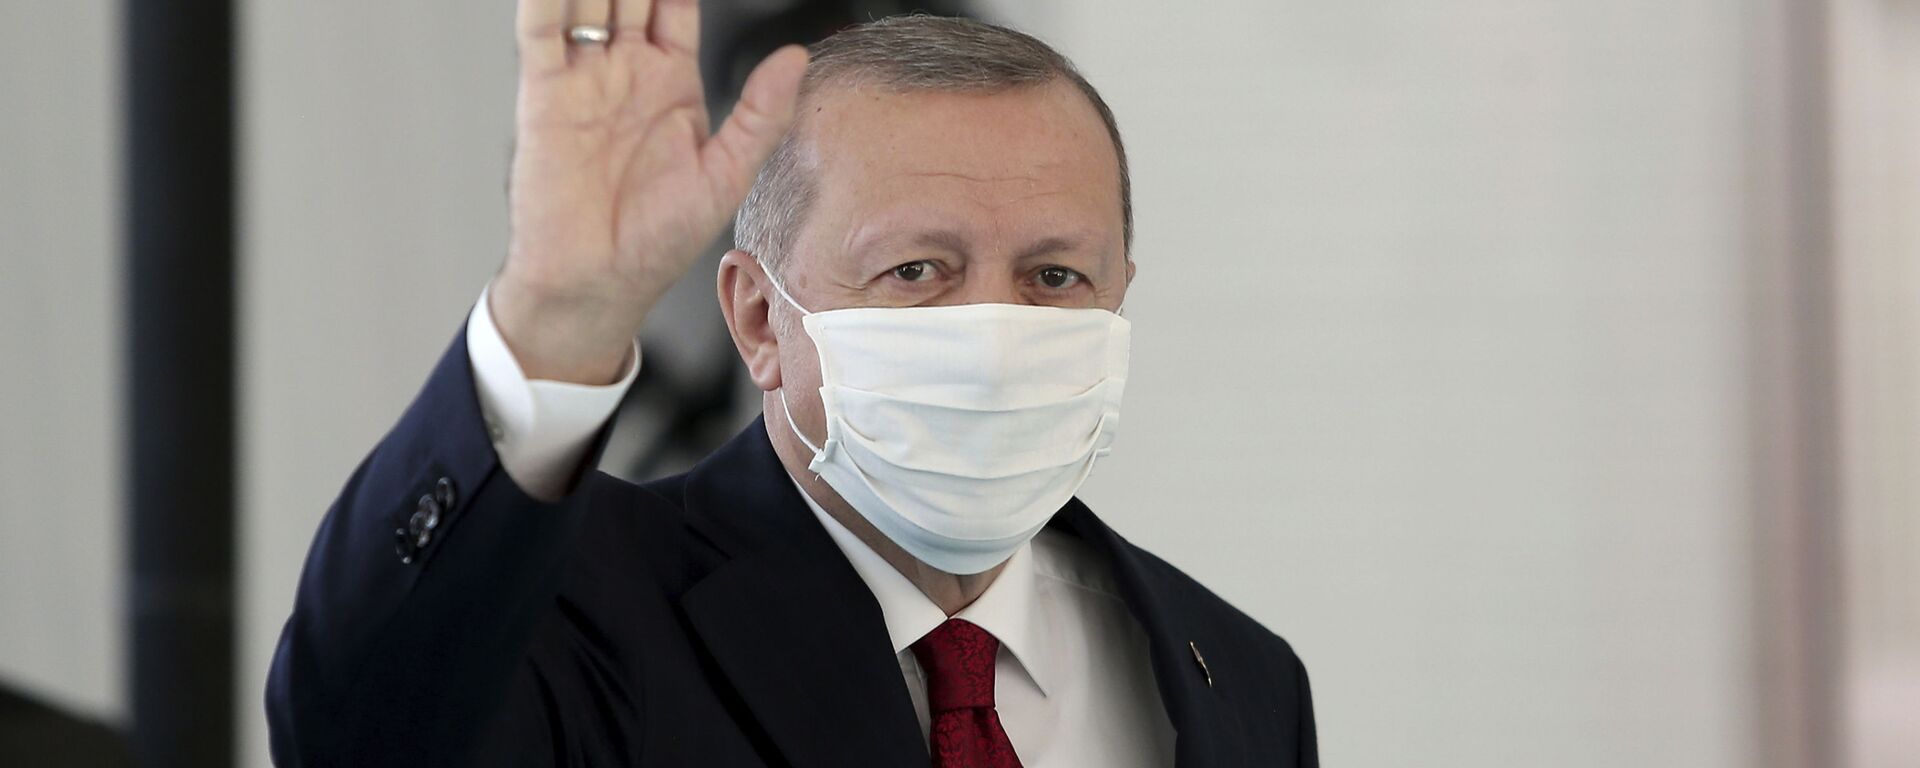 Президент Турции Реджеп Тайип Эрдоган в защитной медицинской маске в одном из госпиталей Стамбула - Sputnik Казахстан, 1920, 23.03.2021